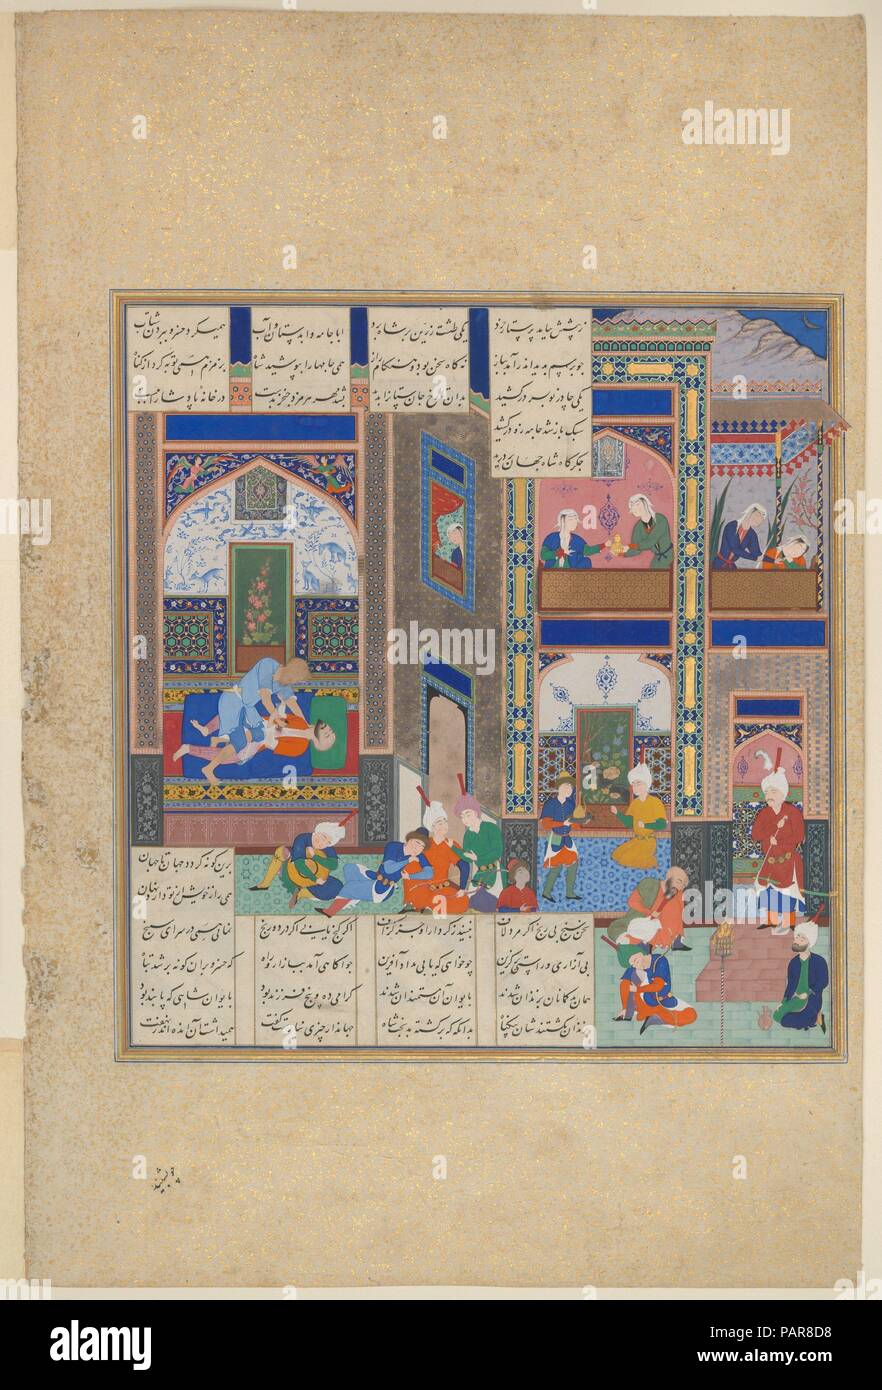 'L'Assassinat de Khusro Parviz', Folio 742v de l'Shahnama (Livre des Rois) de Shah Tahmasp. Artiste : peinture attribuée à 'Abd al-Samad (Shiraz, Iran ca. 1505/15-ca. 1600). Auteur : Abu'l Qasim Firdausi (935-1020). Dimensions : Peinture : Ht. 11 3/16 po. (28,4 cm) 10 W. 3/4 in. (27,3 cm) Page : Ht. 18 1/2 in. (47 cm) W.12 1/2 in. (31,8 cm) TMC : Ht. En 22. (55,9 cm) W. 16 in. (40,6 cm) Cadre : Ht. En 23. (58,4 cm) W. 17 in. (43,2 cm). Date : ca. 1535. Après de nombreuses années de règle honnête, Khusro Parviz est devenu injuste et ses chefs comploté pour le renverser. Les conspirateurs placé hi Banque D'Images